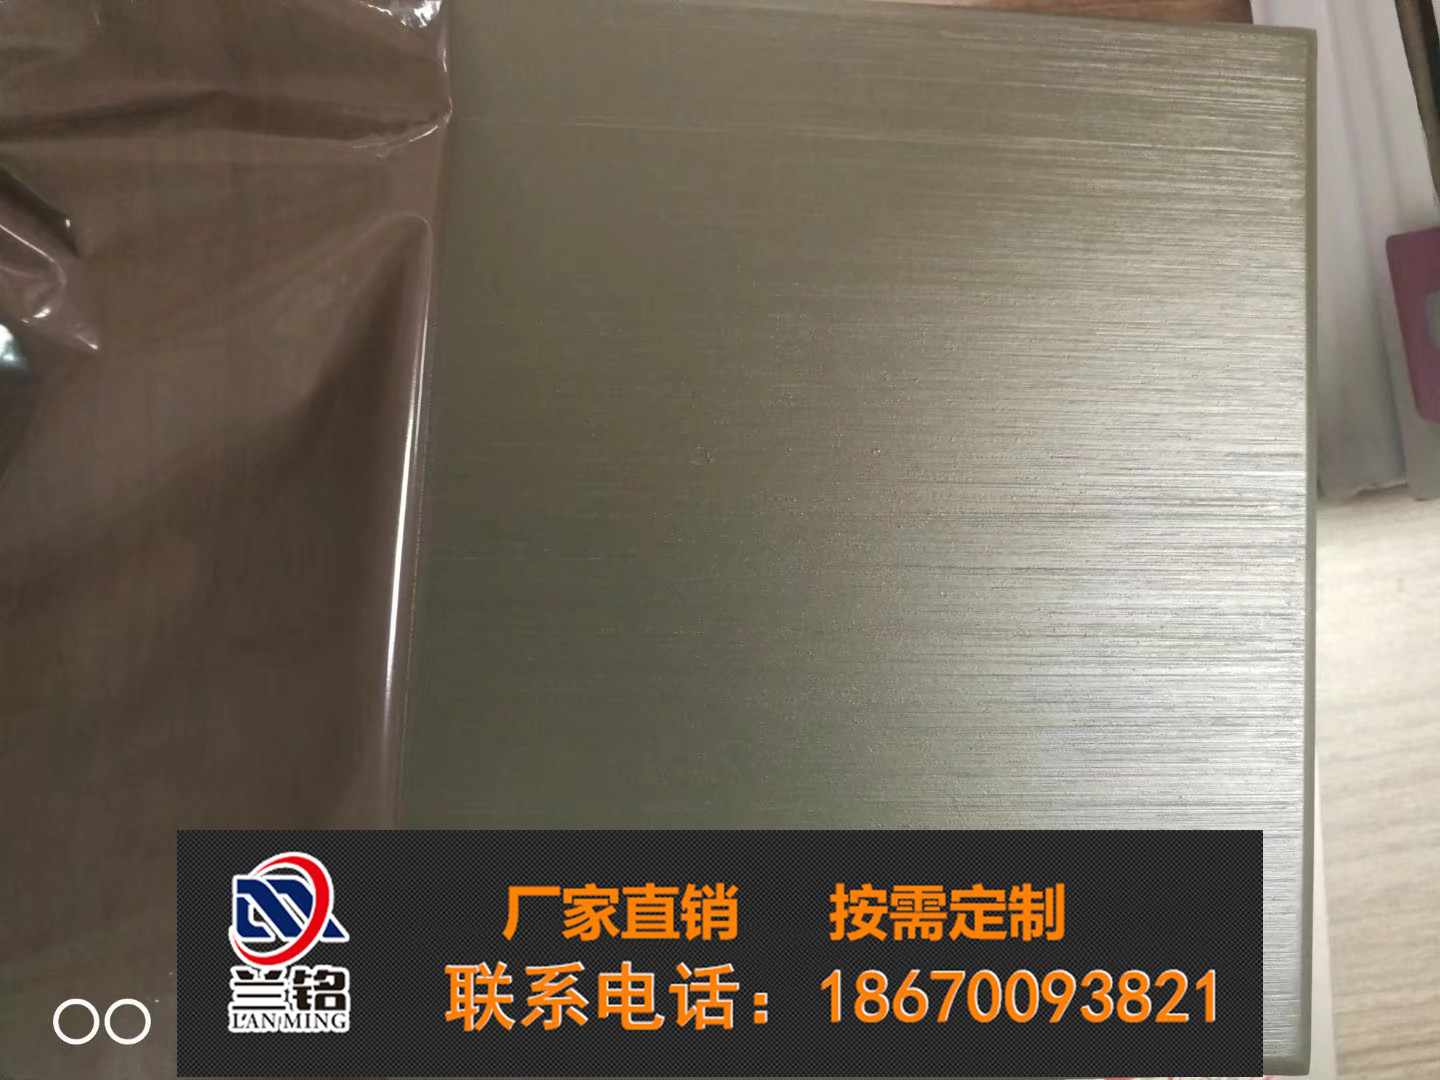 内蒙古包头铝片铝皮干挂幕墙包边厂商出售